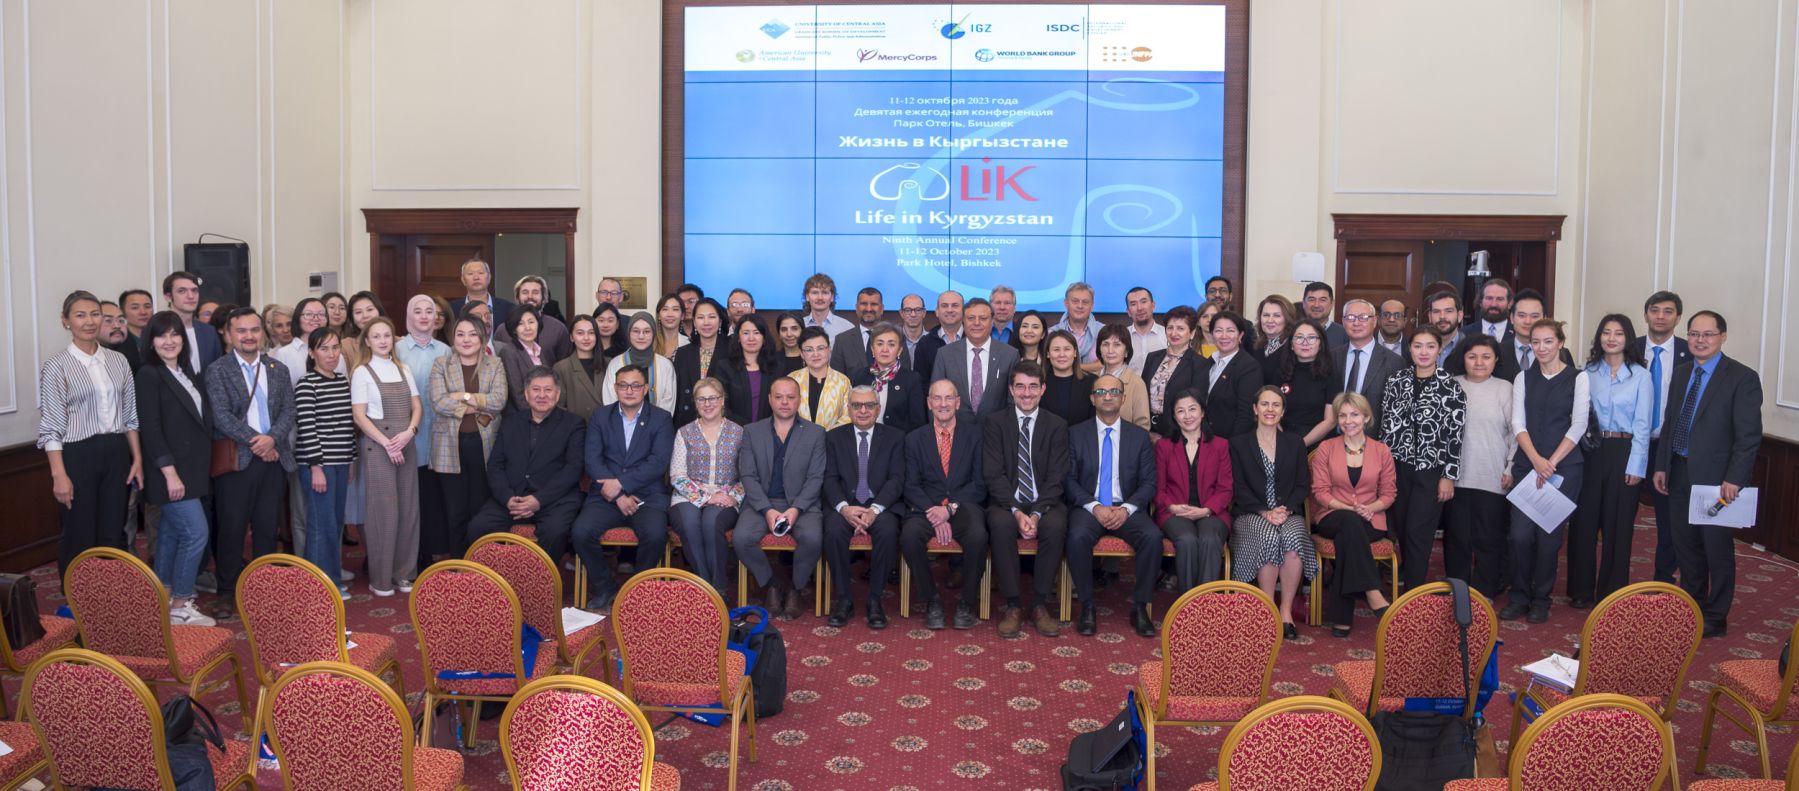 Die jährliche LiK-Konferenz brachte internationale Experten zum Wissensaustausch über sozioökonomische Entwicklungen in der Region zusammen. Foto: University of Central Asia